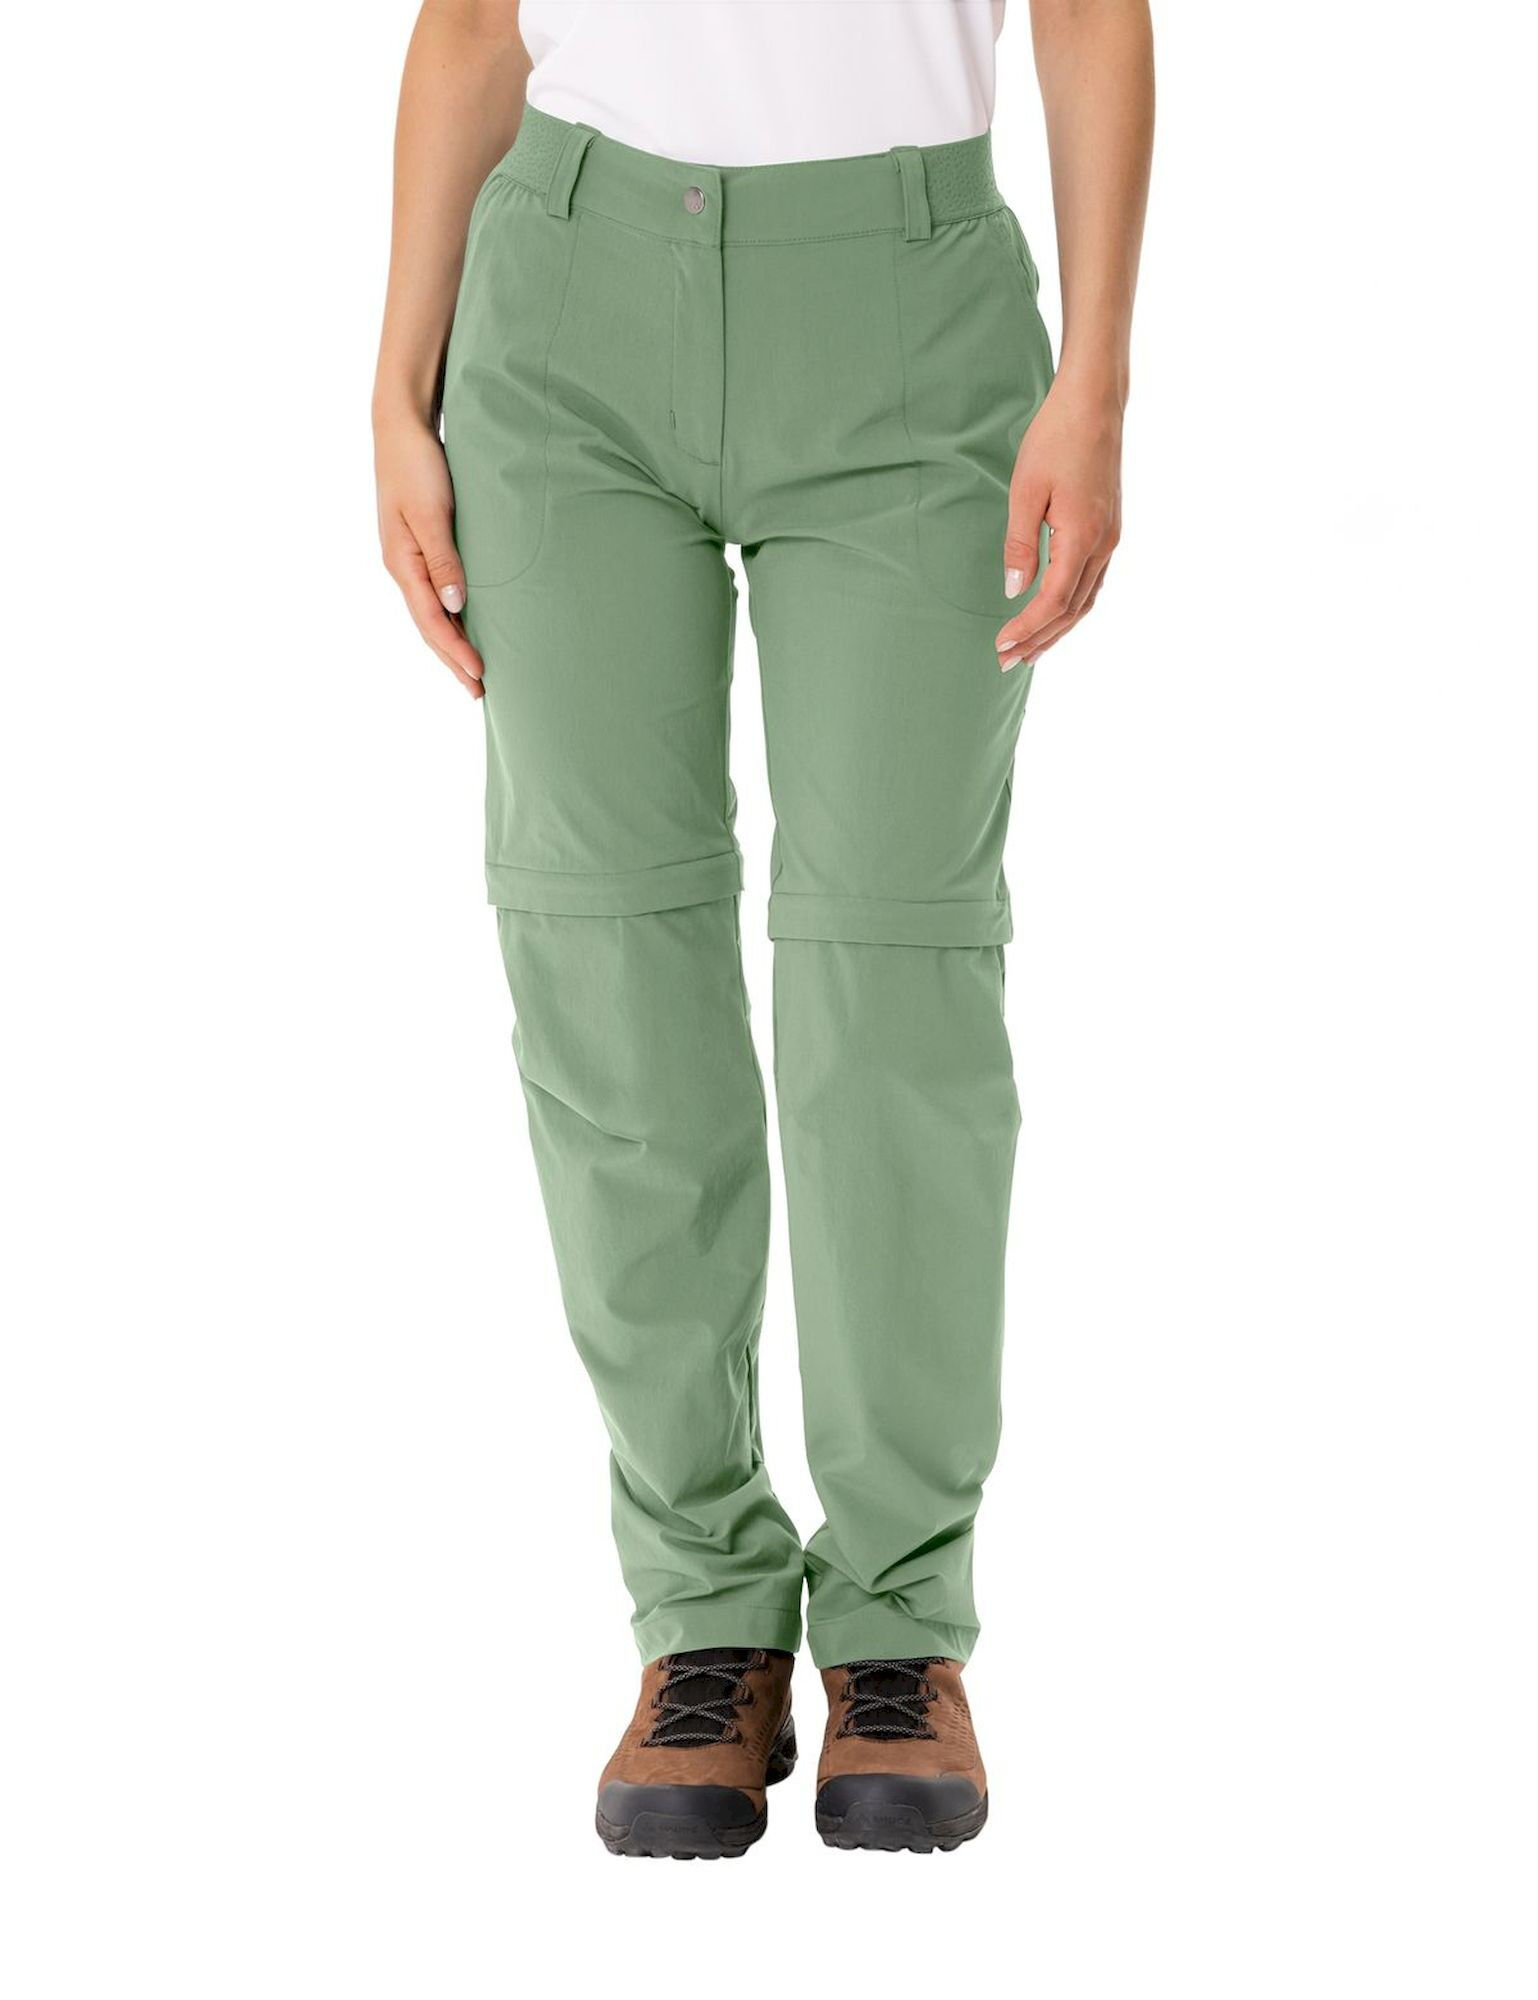 Vaude Farley Stretch ZO Pants II - Hiking trousers - Women's